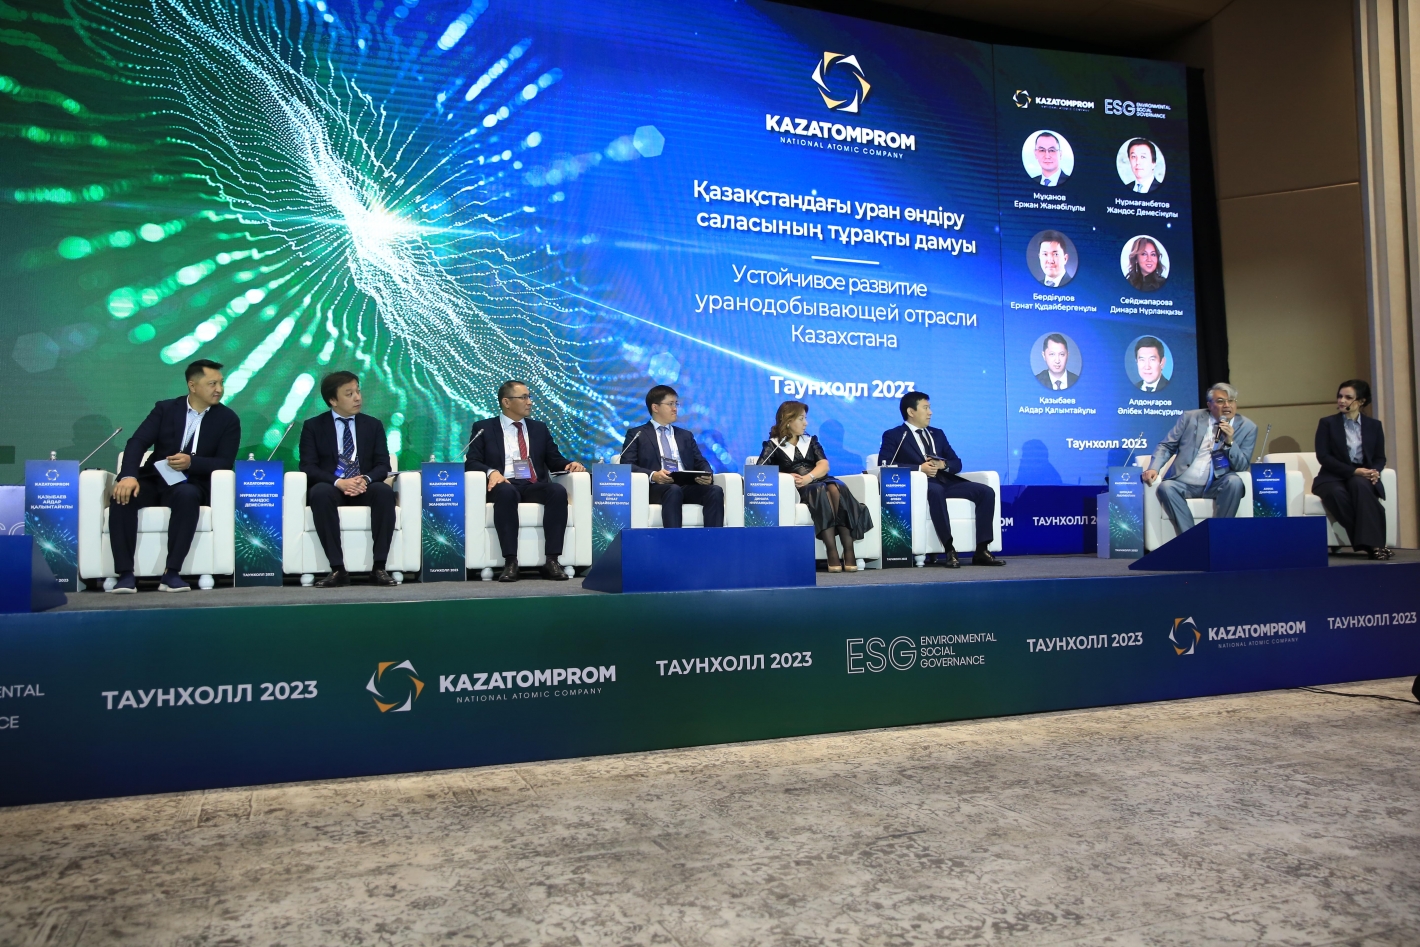 Повестка ESG и устойчивого развития в фокусе внимания Казатомпрома